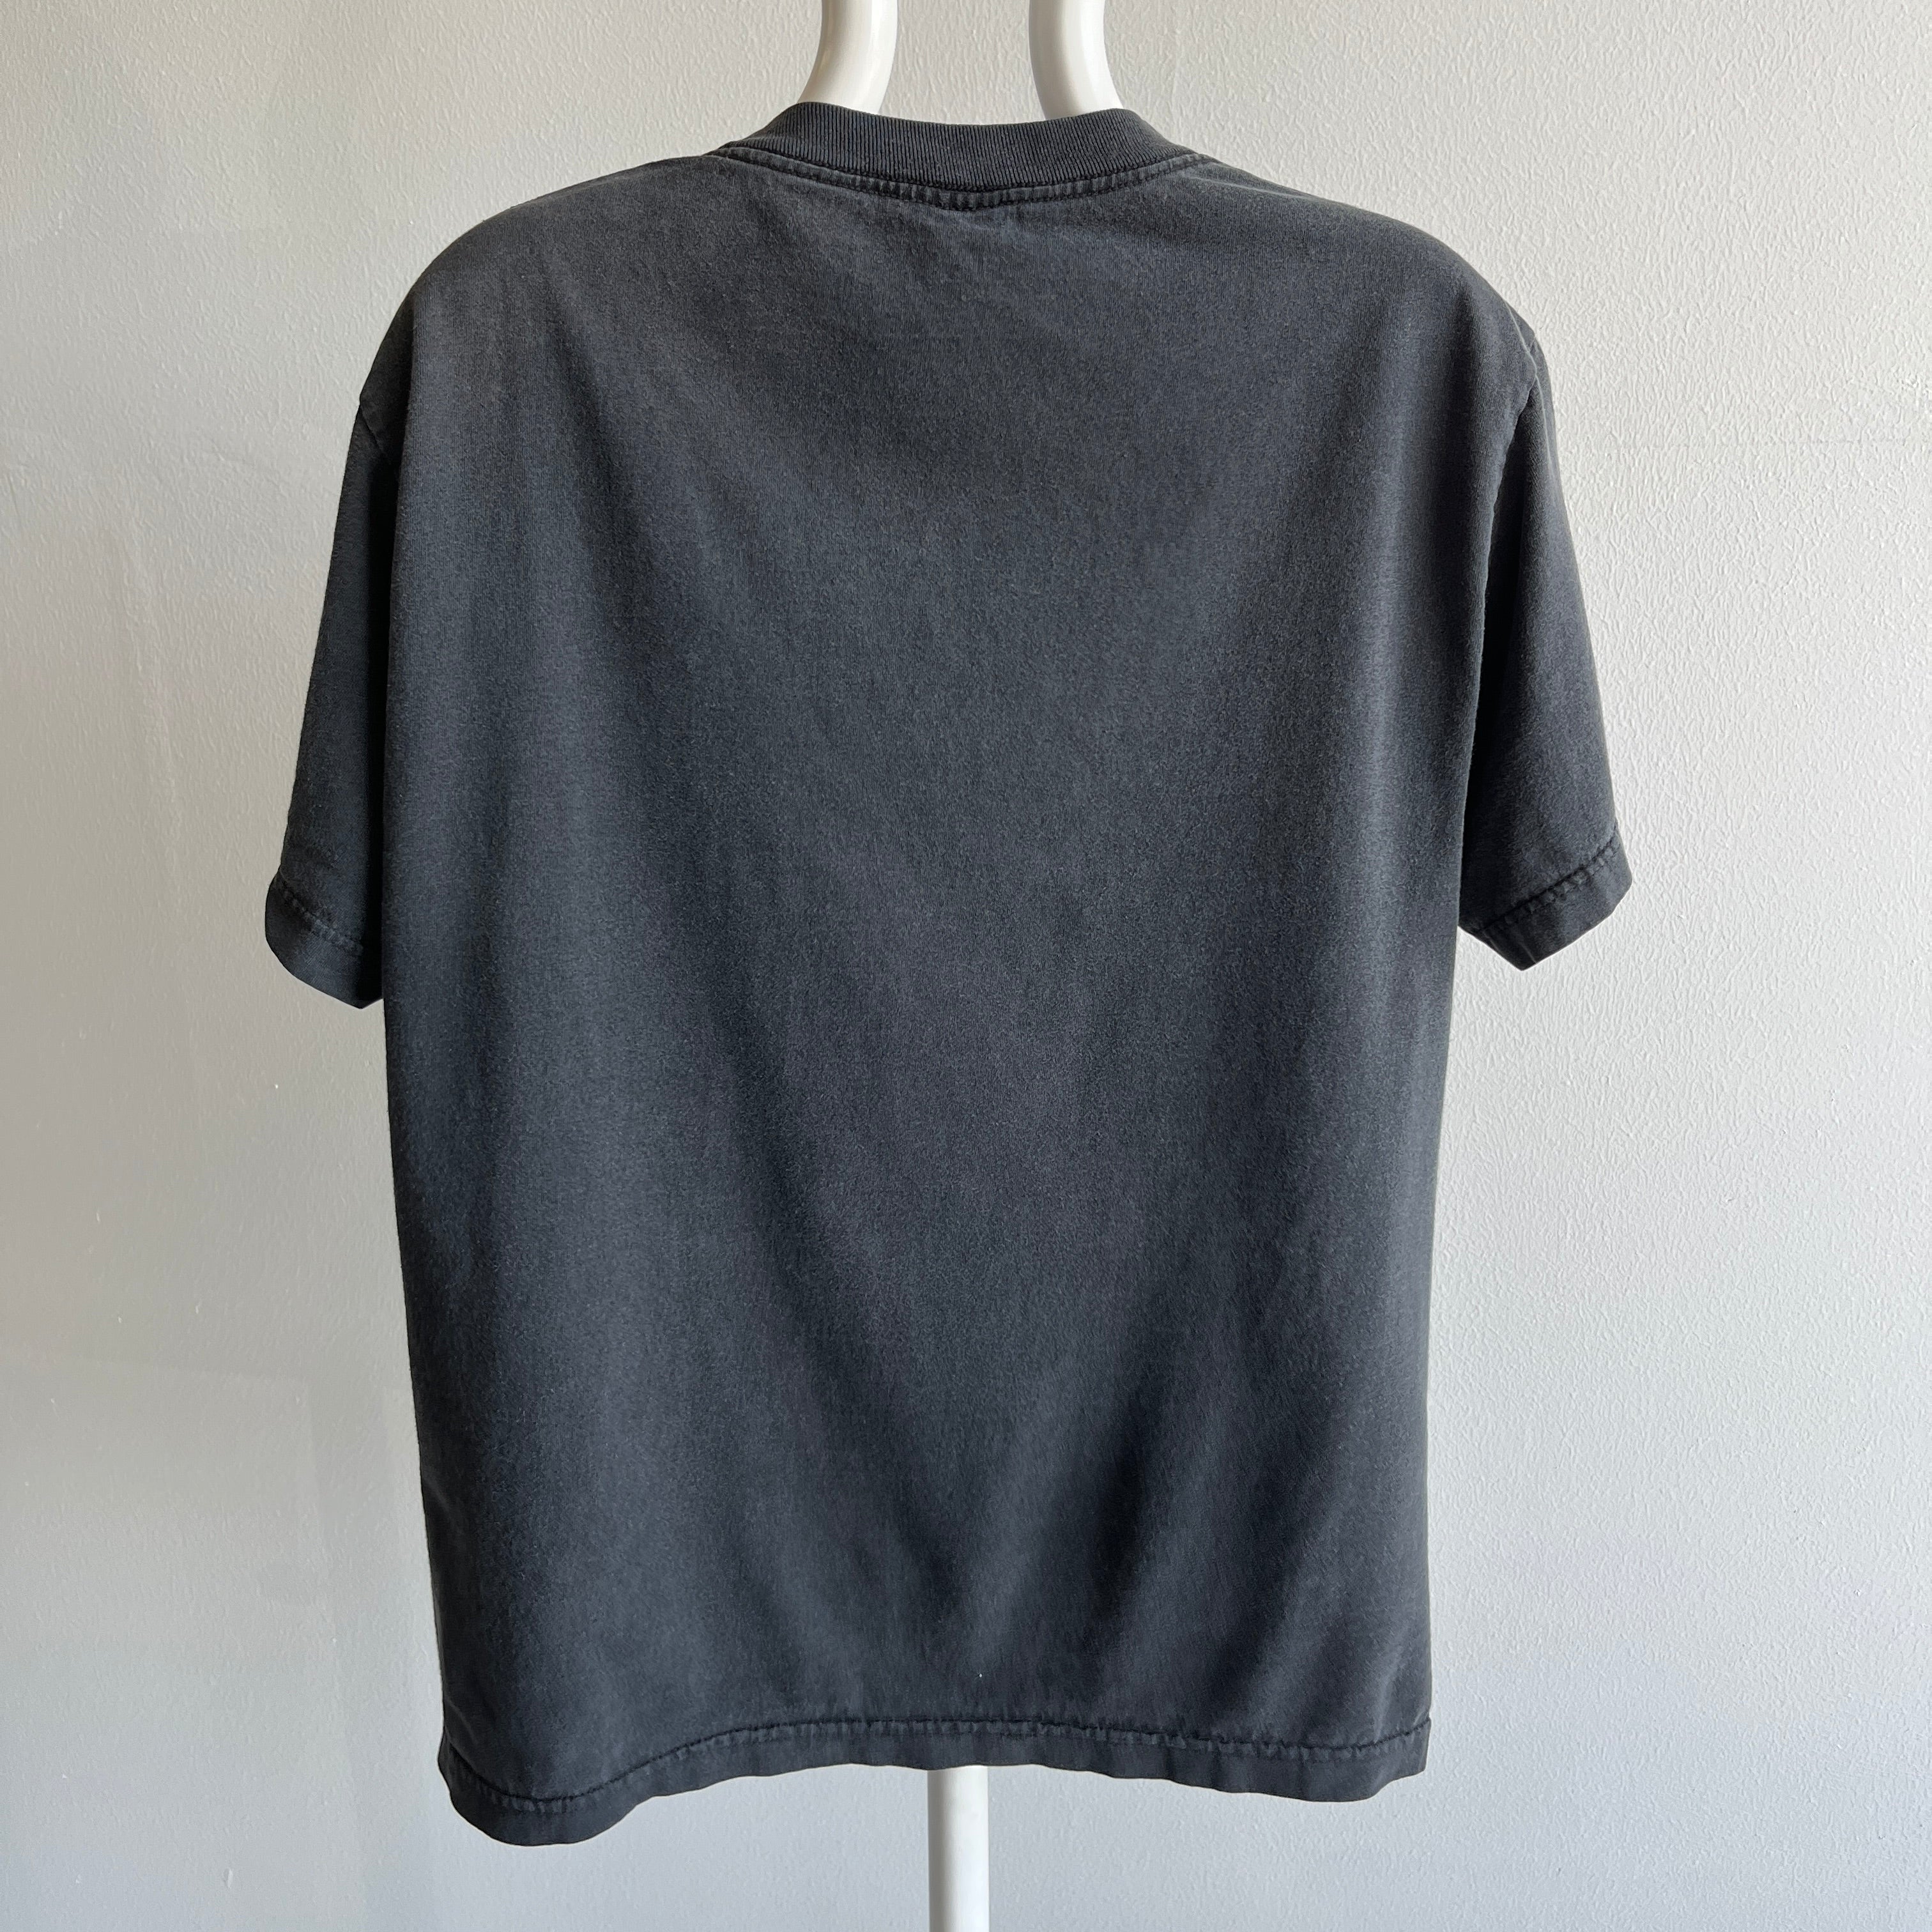 1990s Blackbird Air Force Cotton T-Shirt